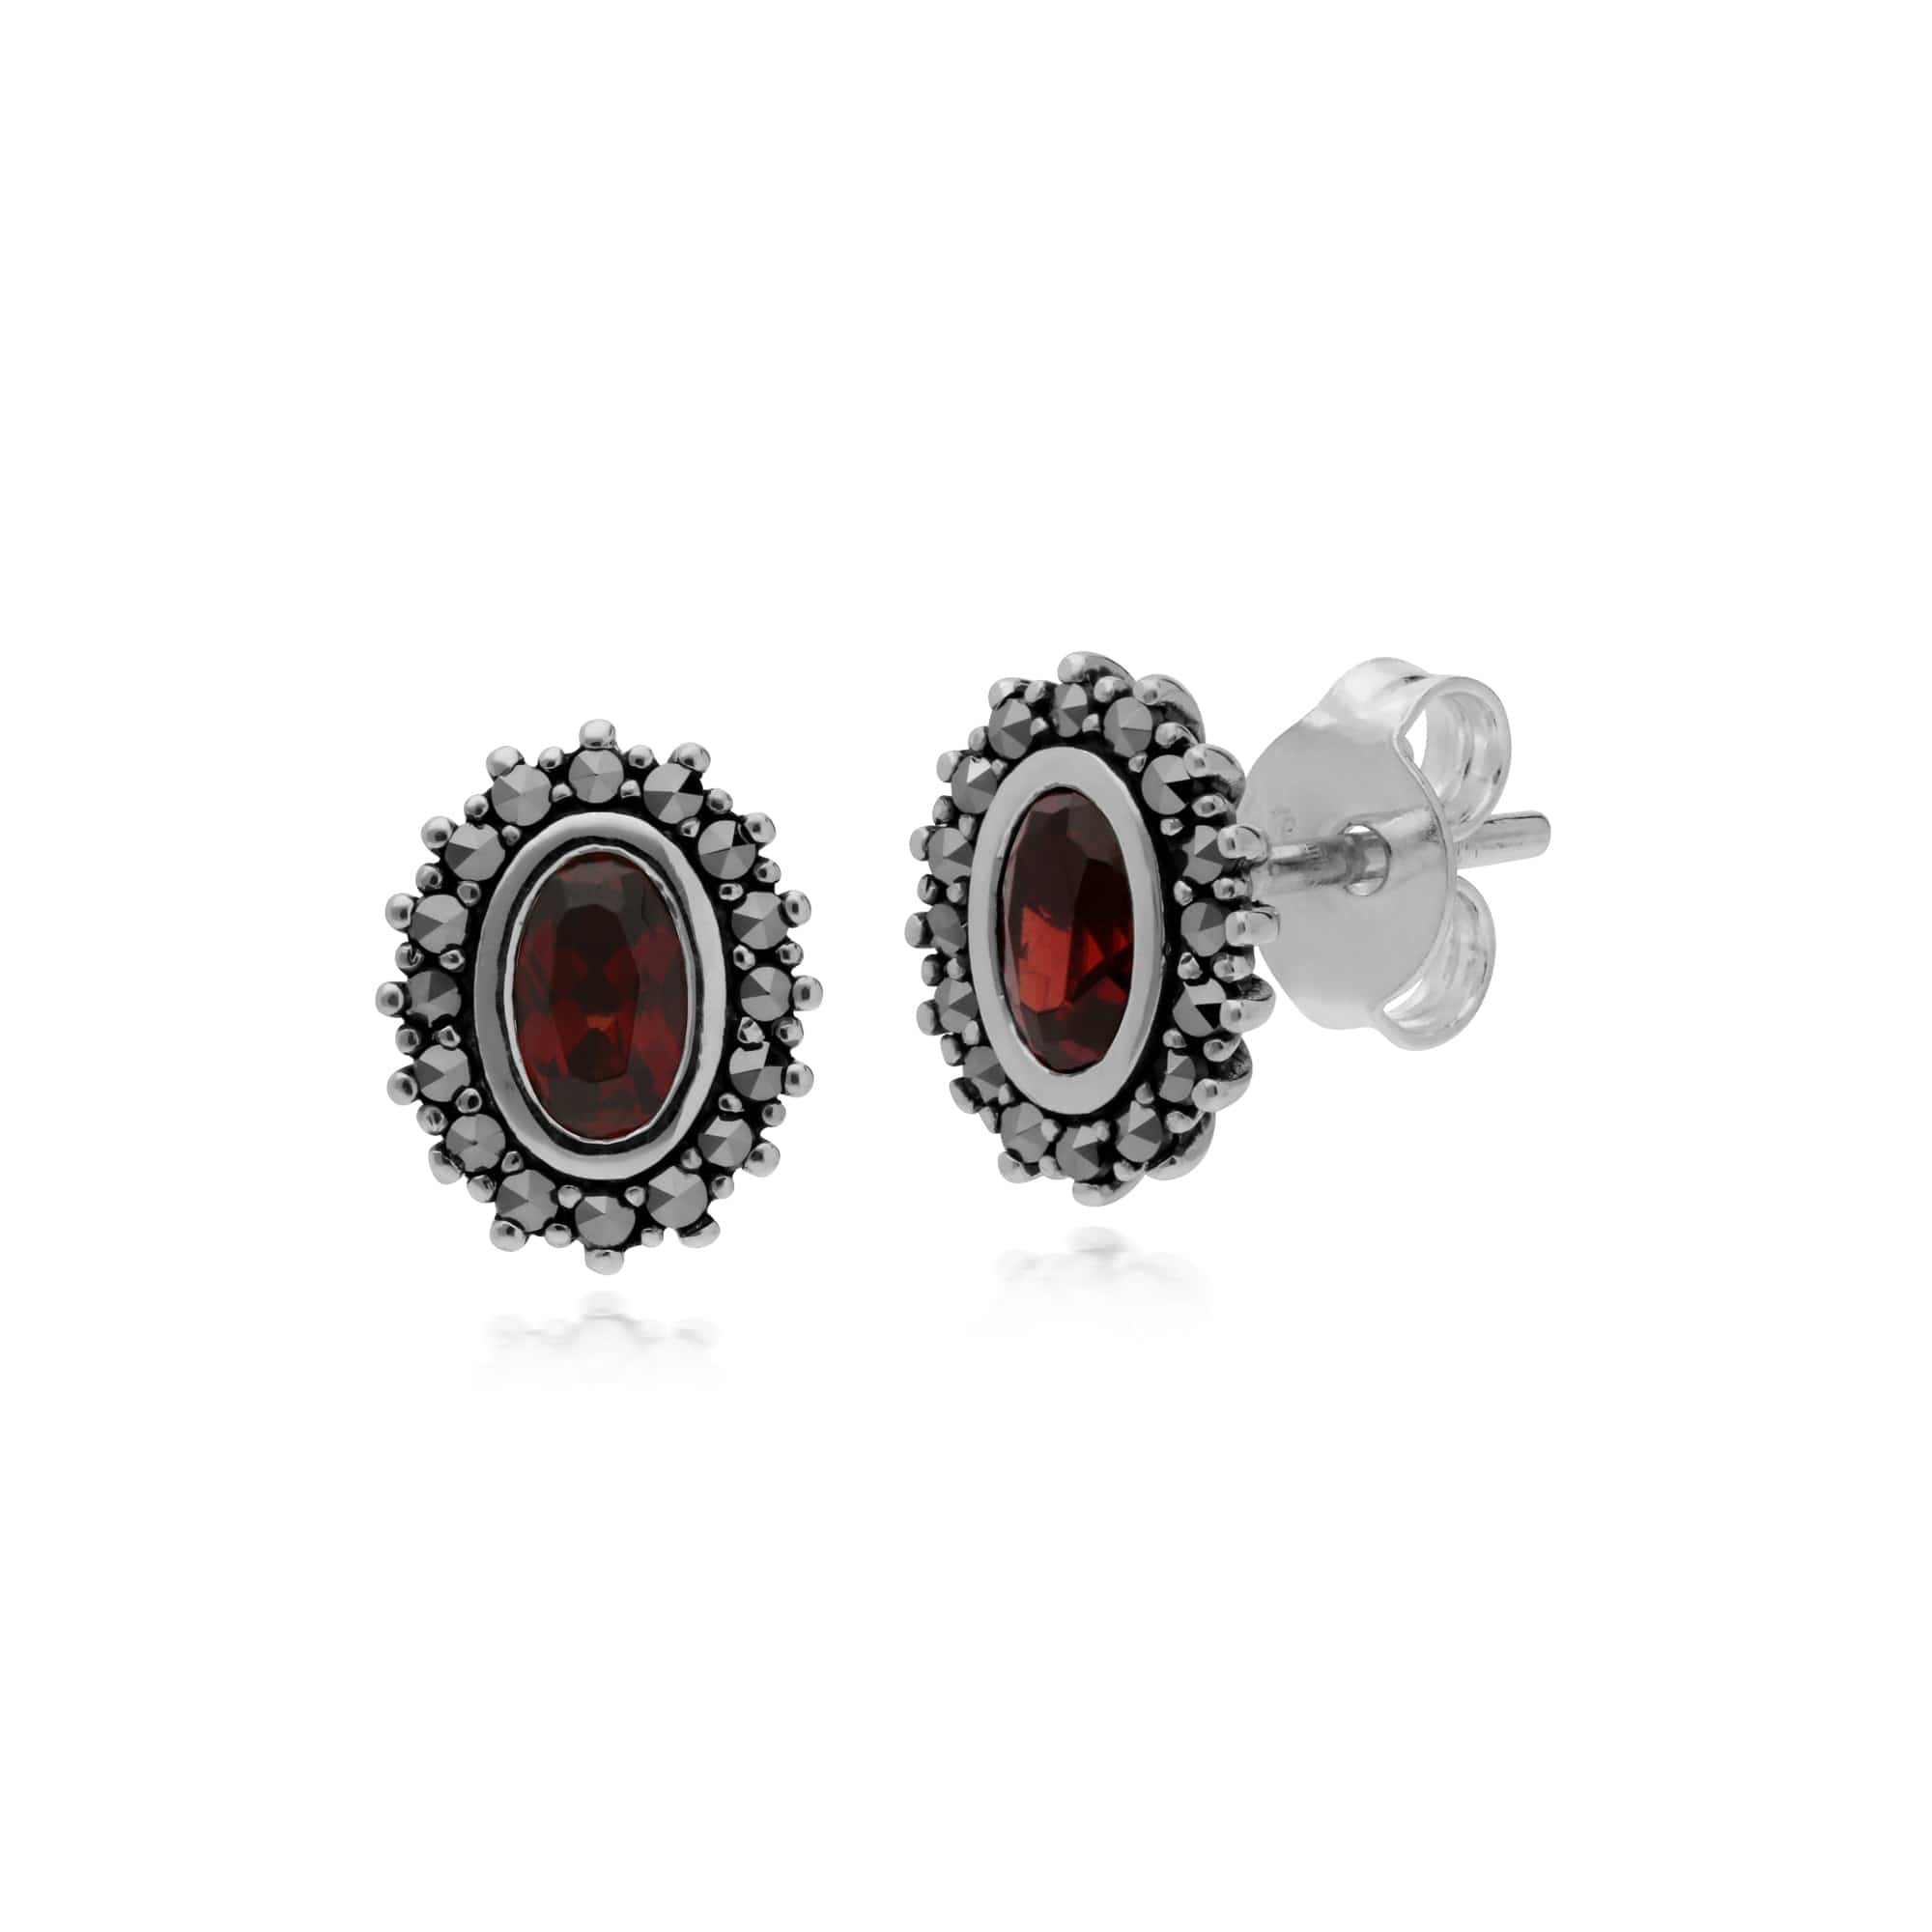 214E860903925-214P301403925 Art Deco Style Oval Garnet & Marcasite Halo Stud Earrings & Pendant Set in 925 Sterling Silver 2